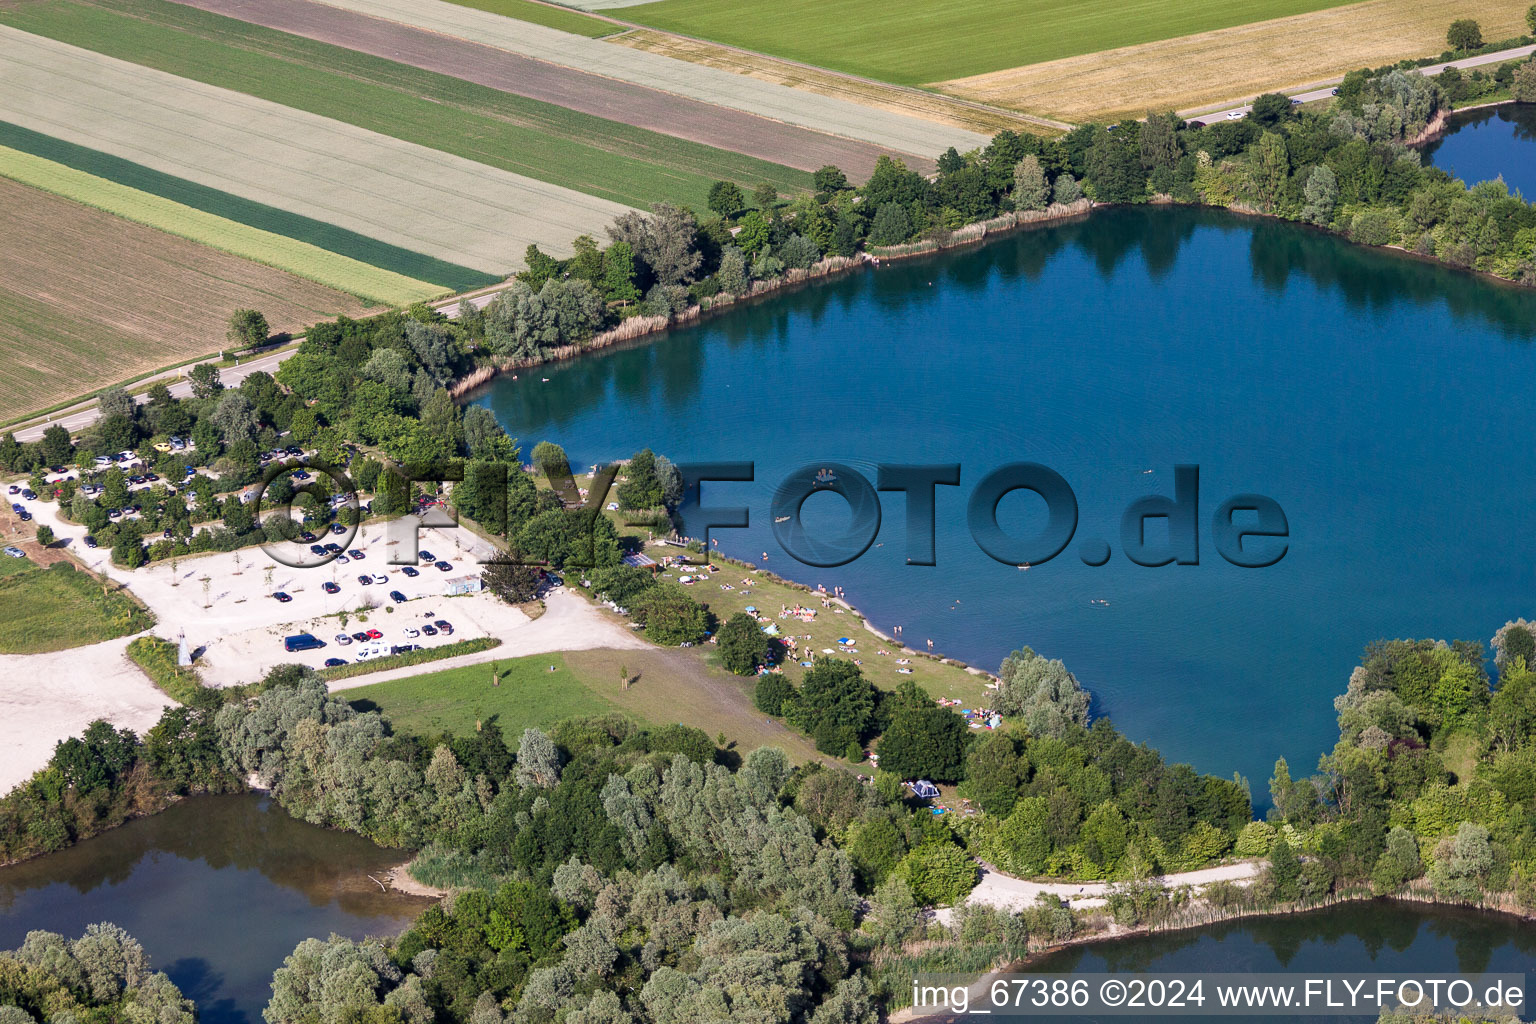 Vue aérienne de Des foules massives de baigneurs sur la plage et sur les rives du lac de baignade Heppenäcker à Rottenacker dans le département Bade-Wurtemberg, Allemagne